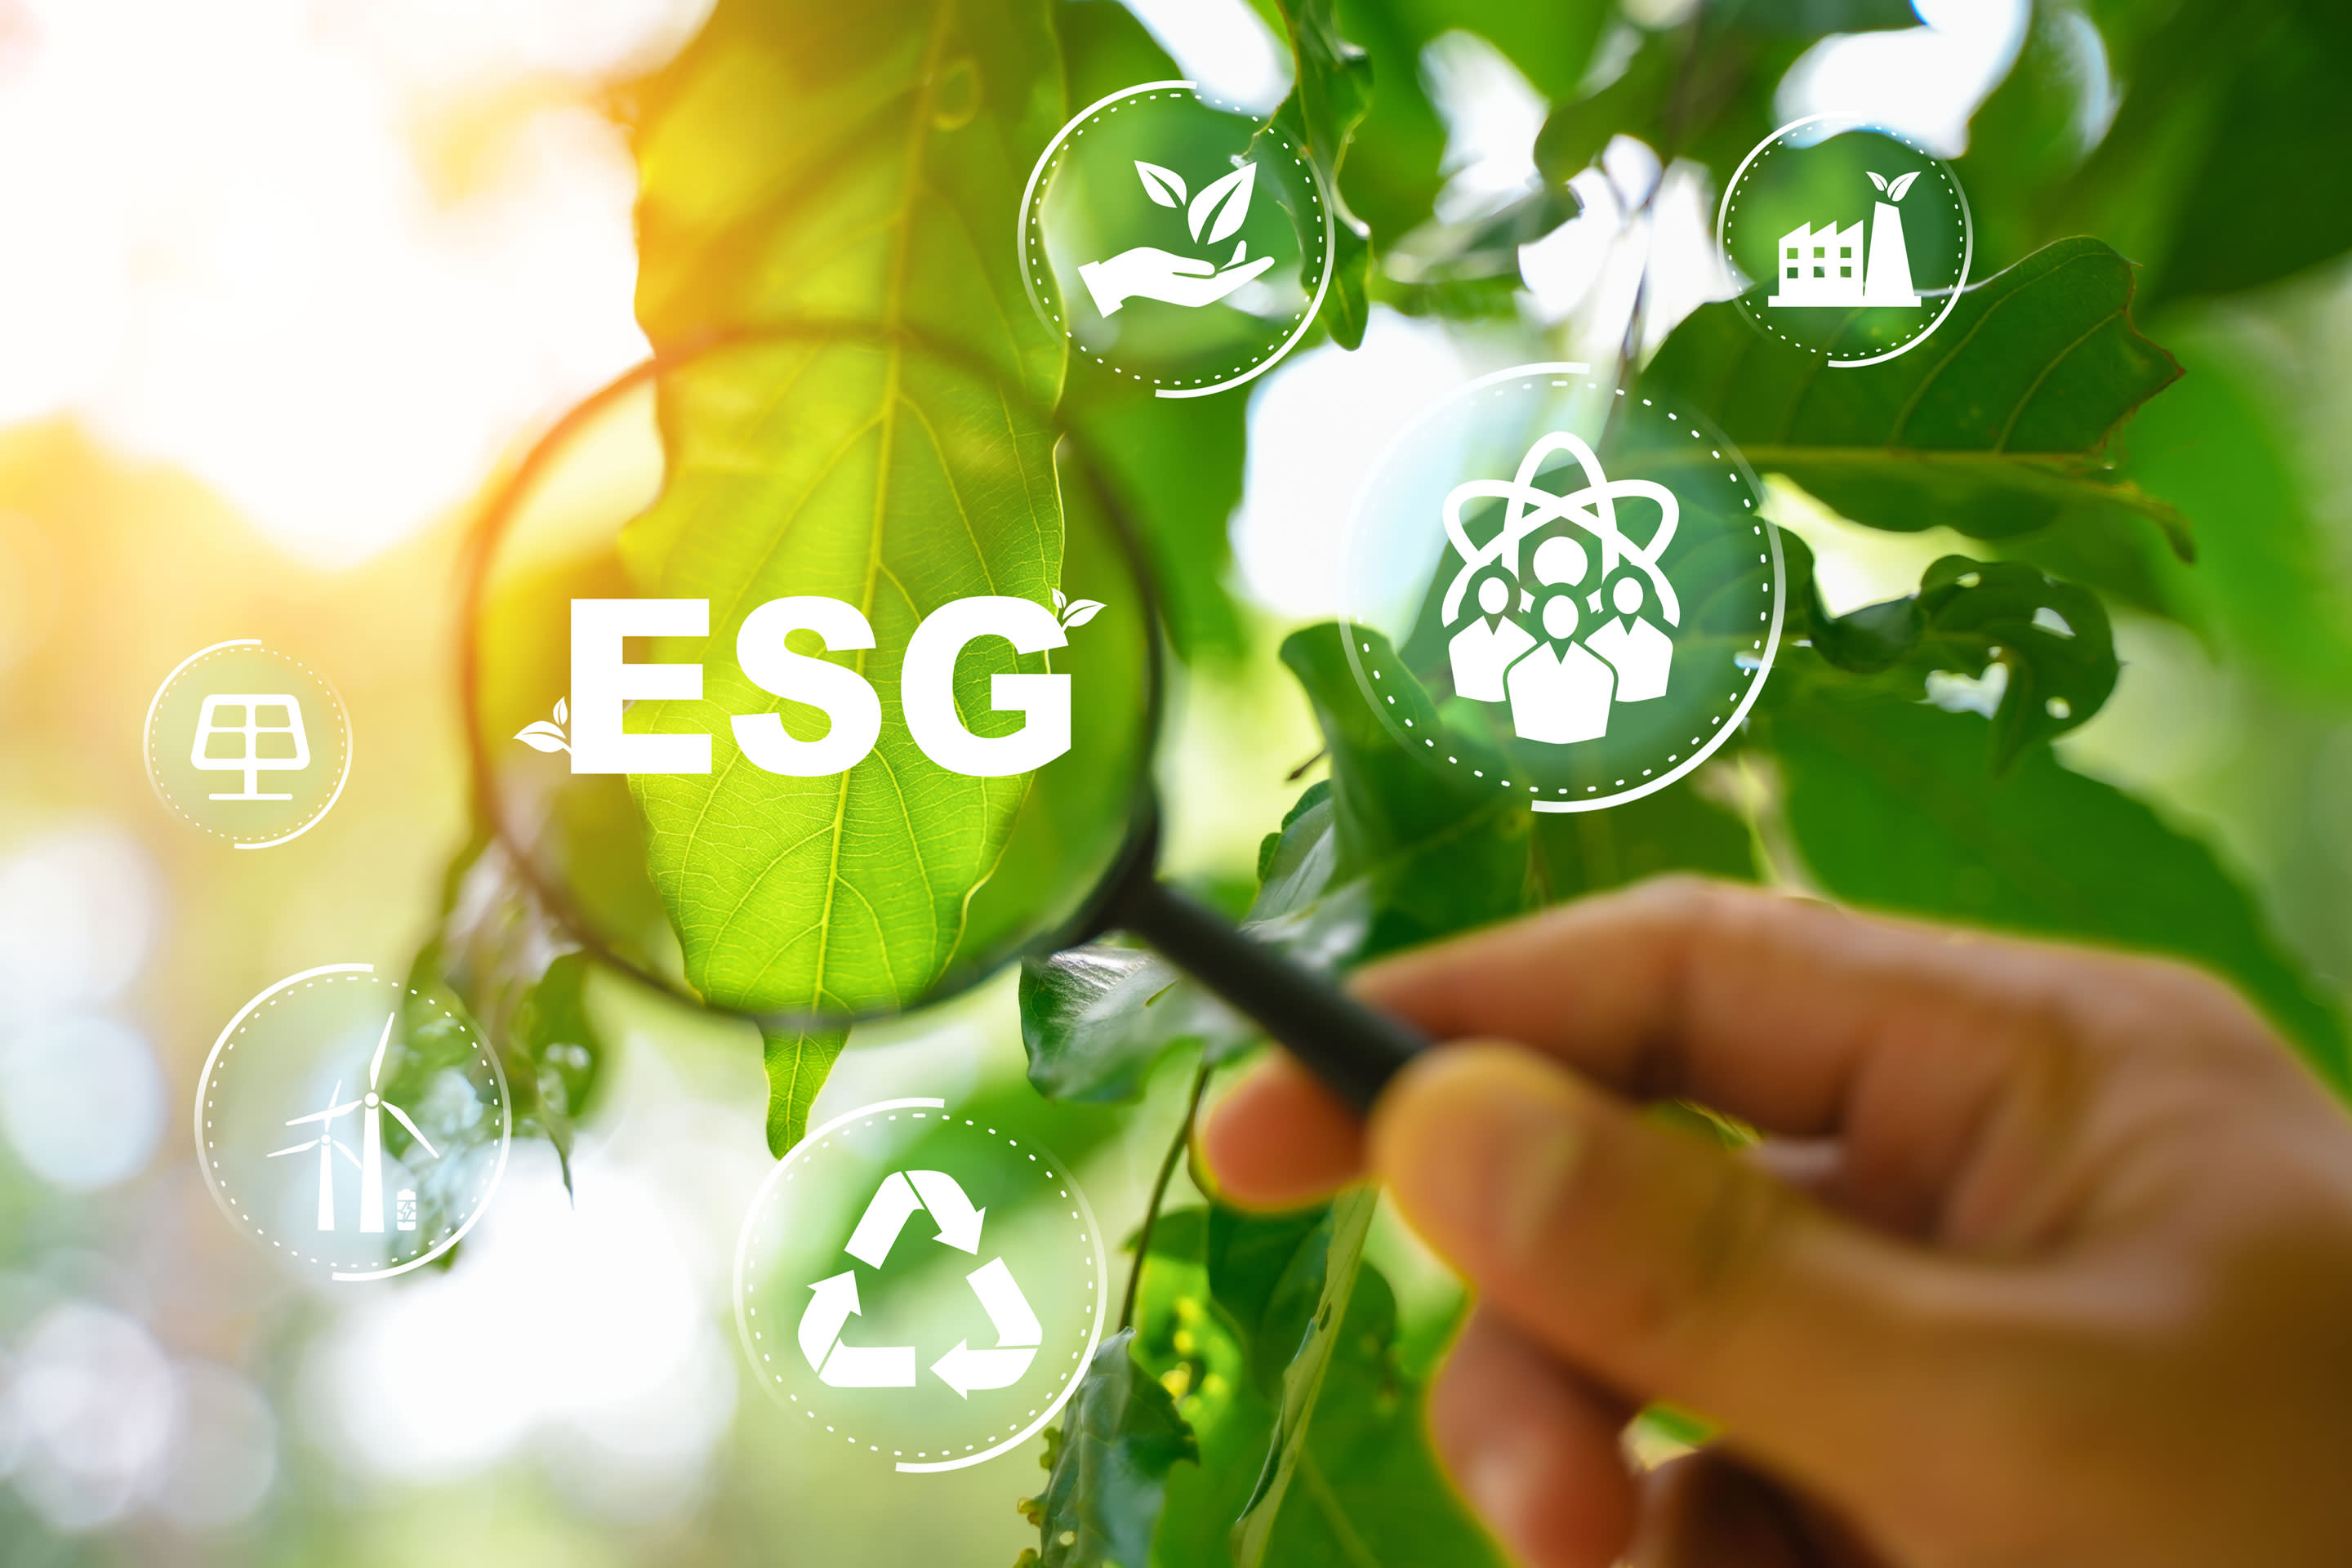 Take a close look at ESG